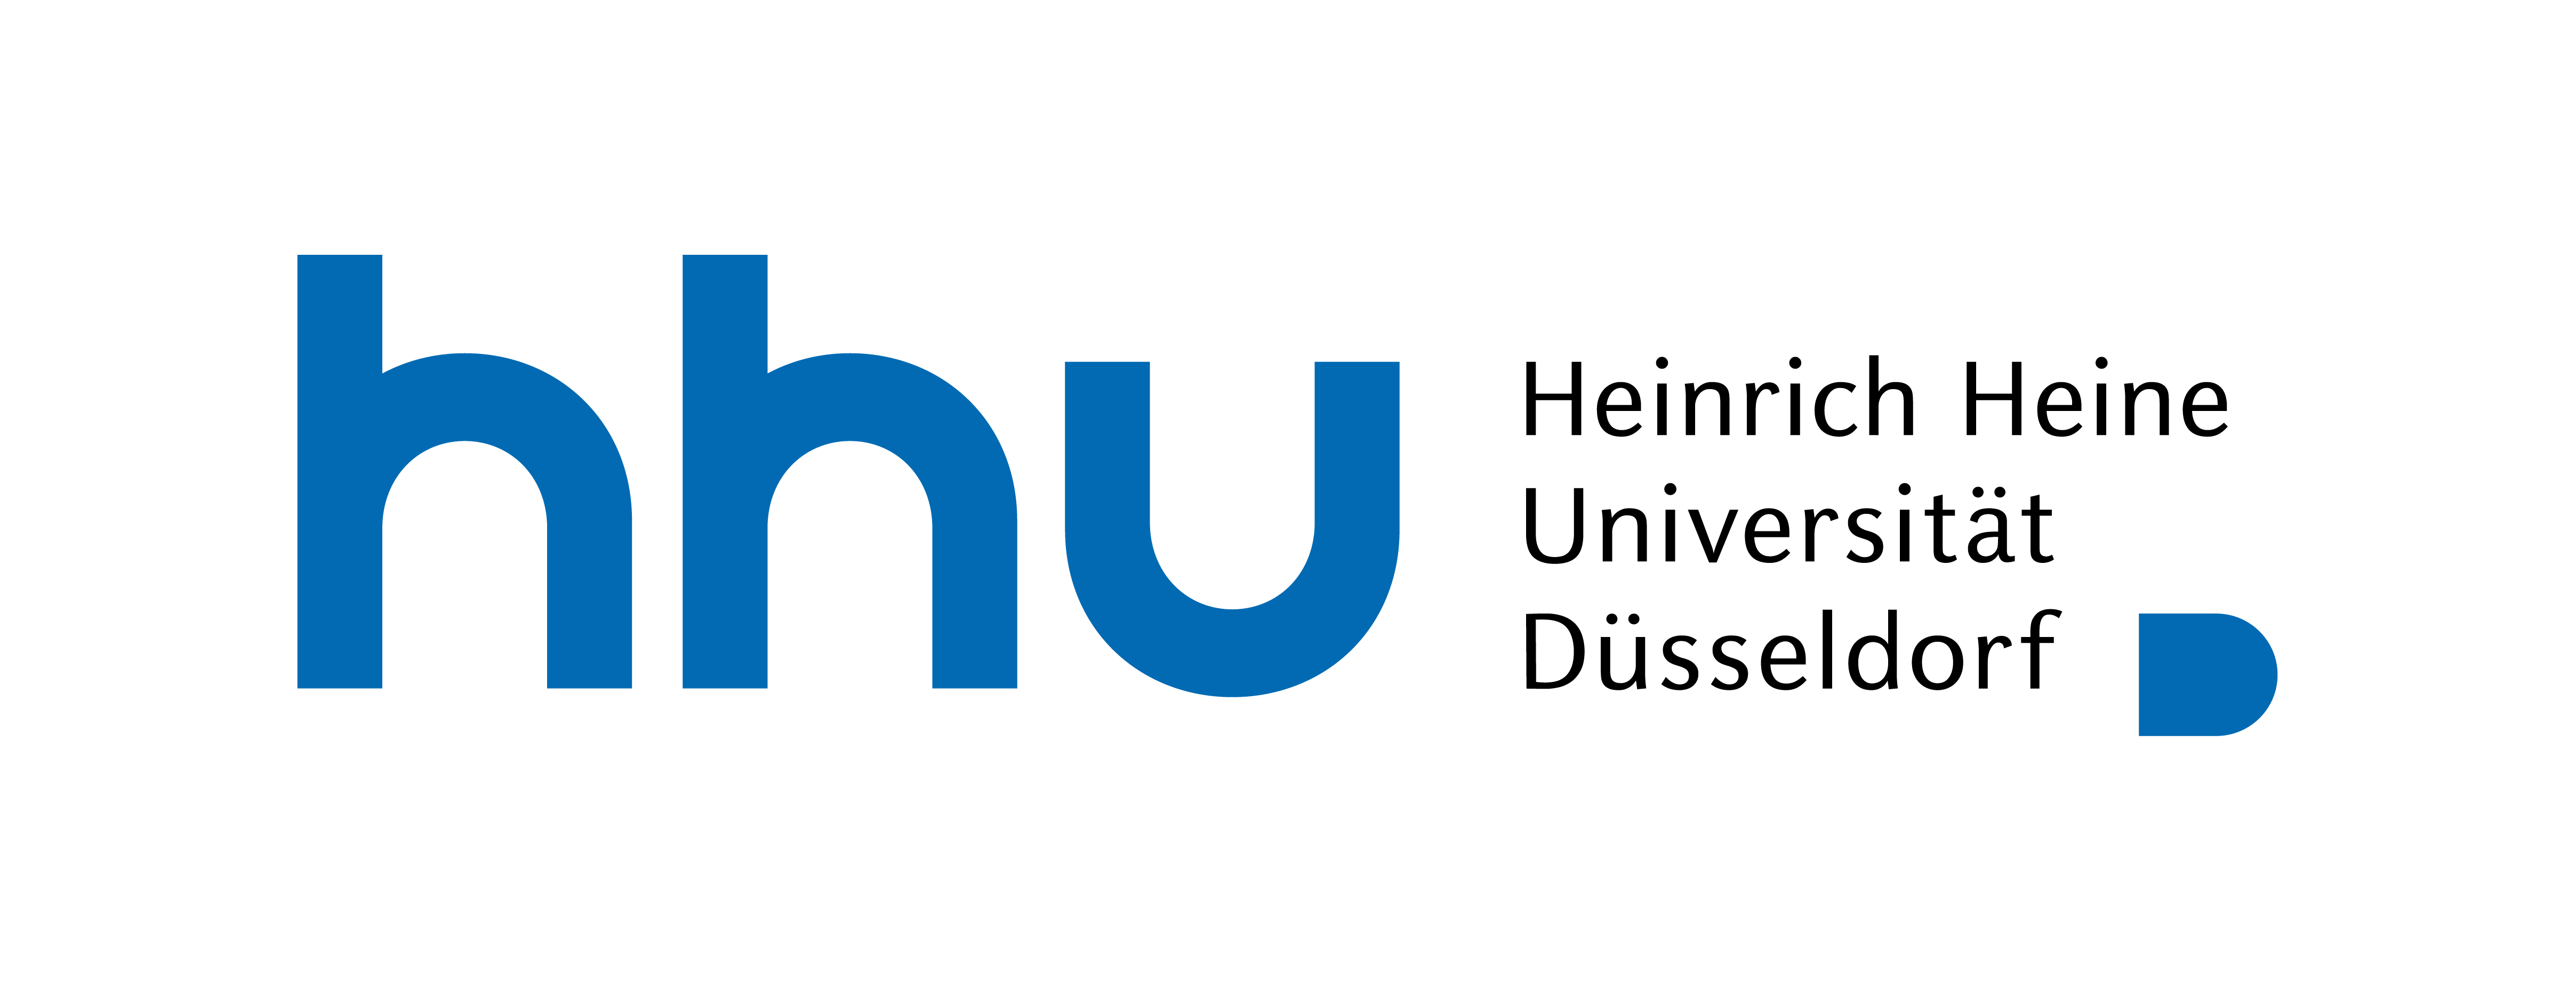 HHU logo: Heinirch Heine Universiät Düsseldorf